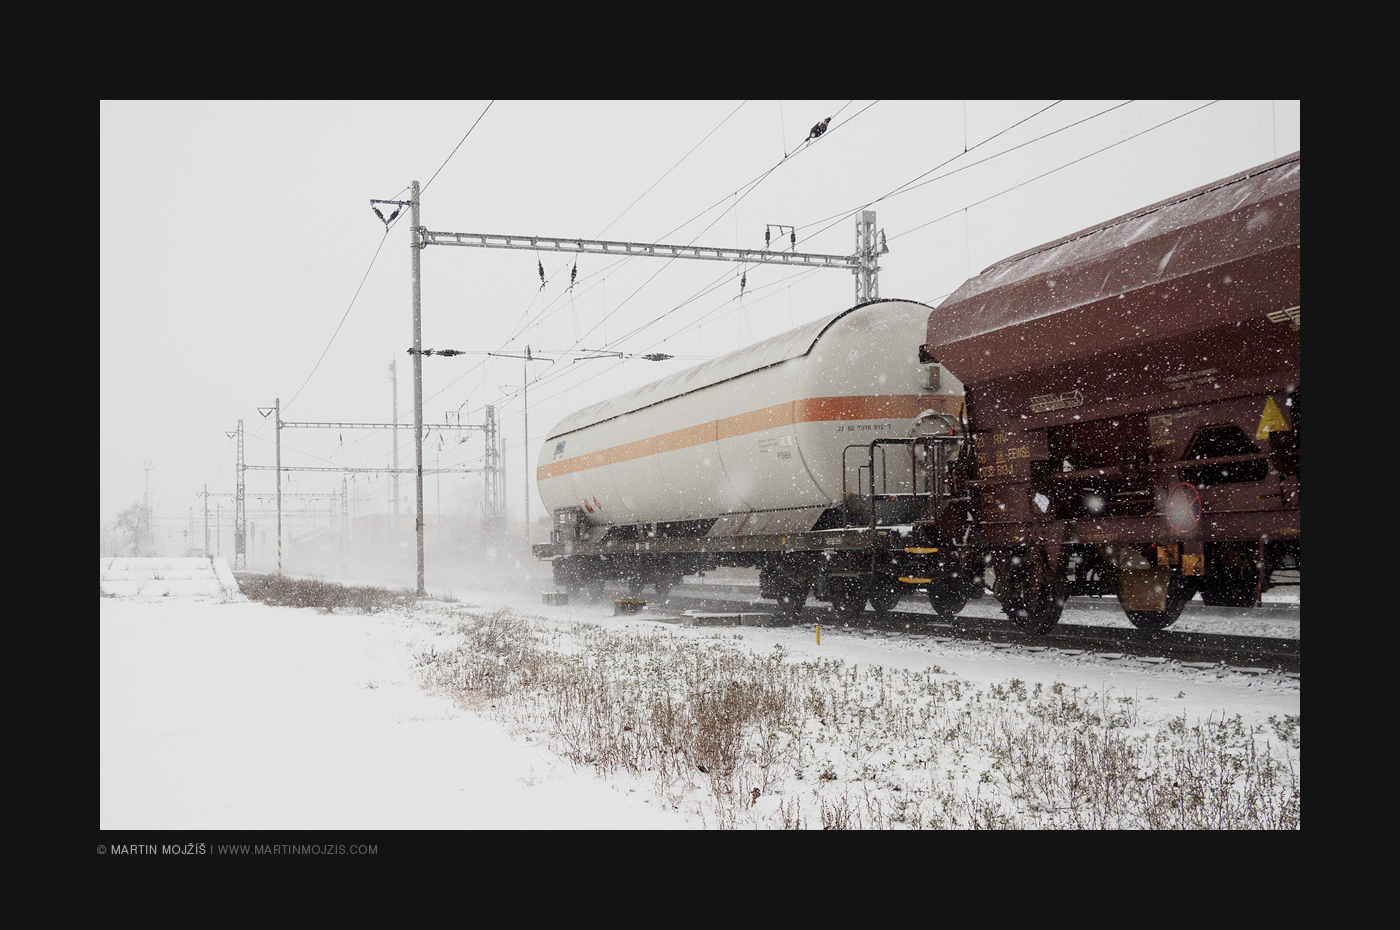 Nákladní vlak ve sněhové vánici.